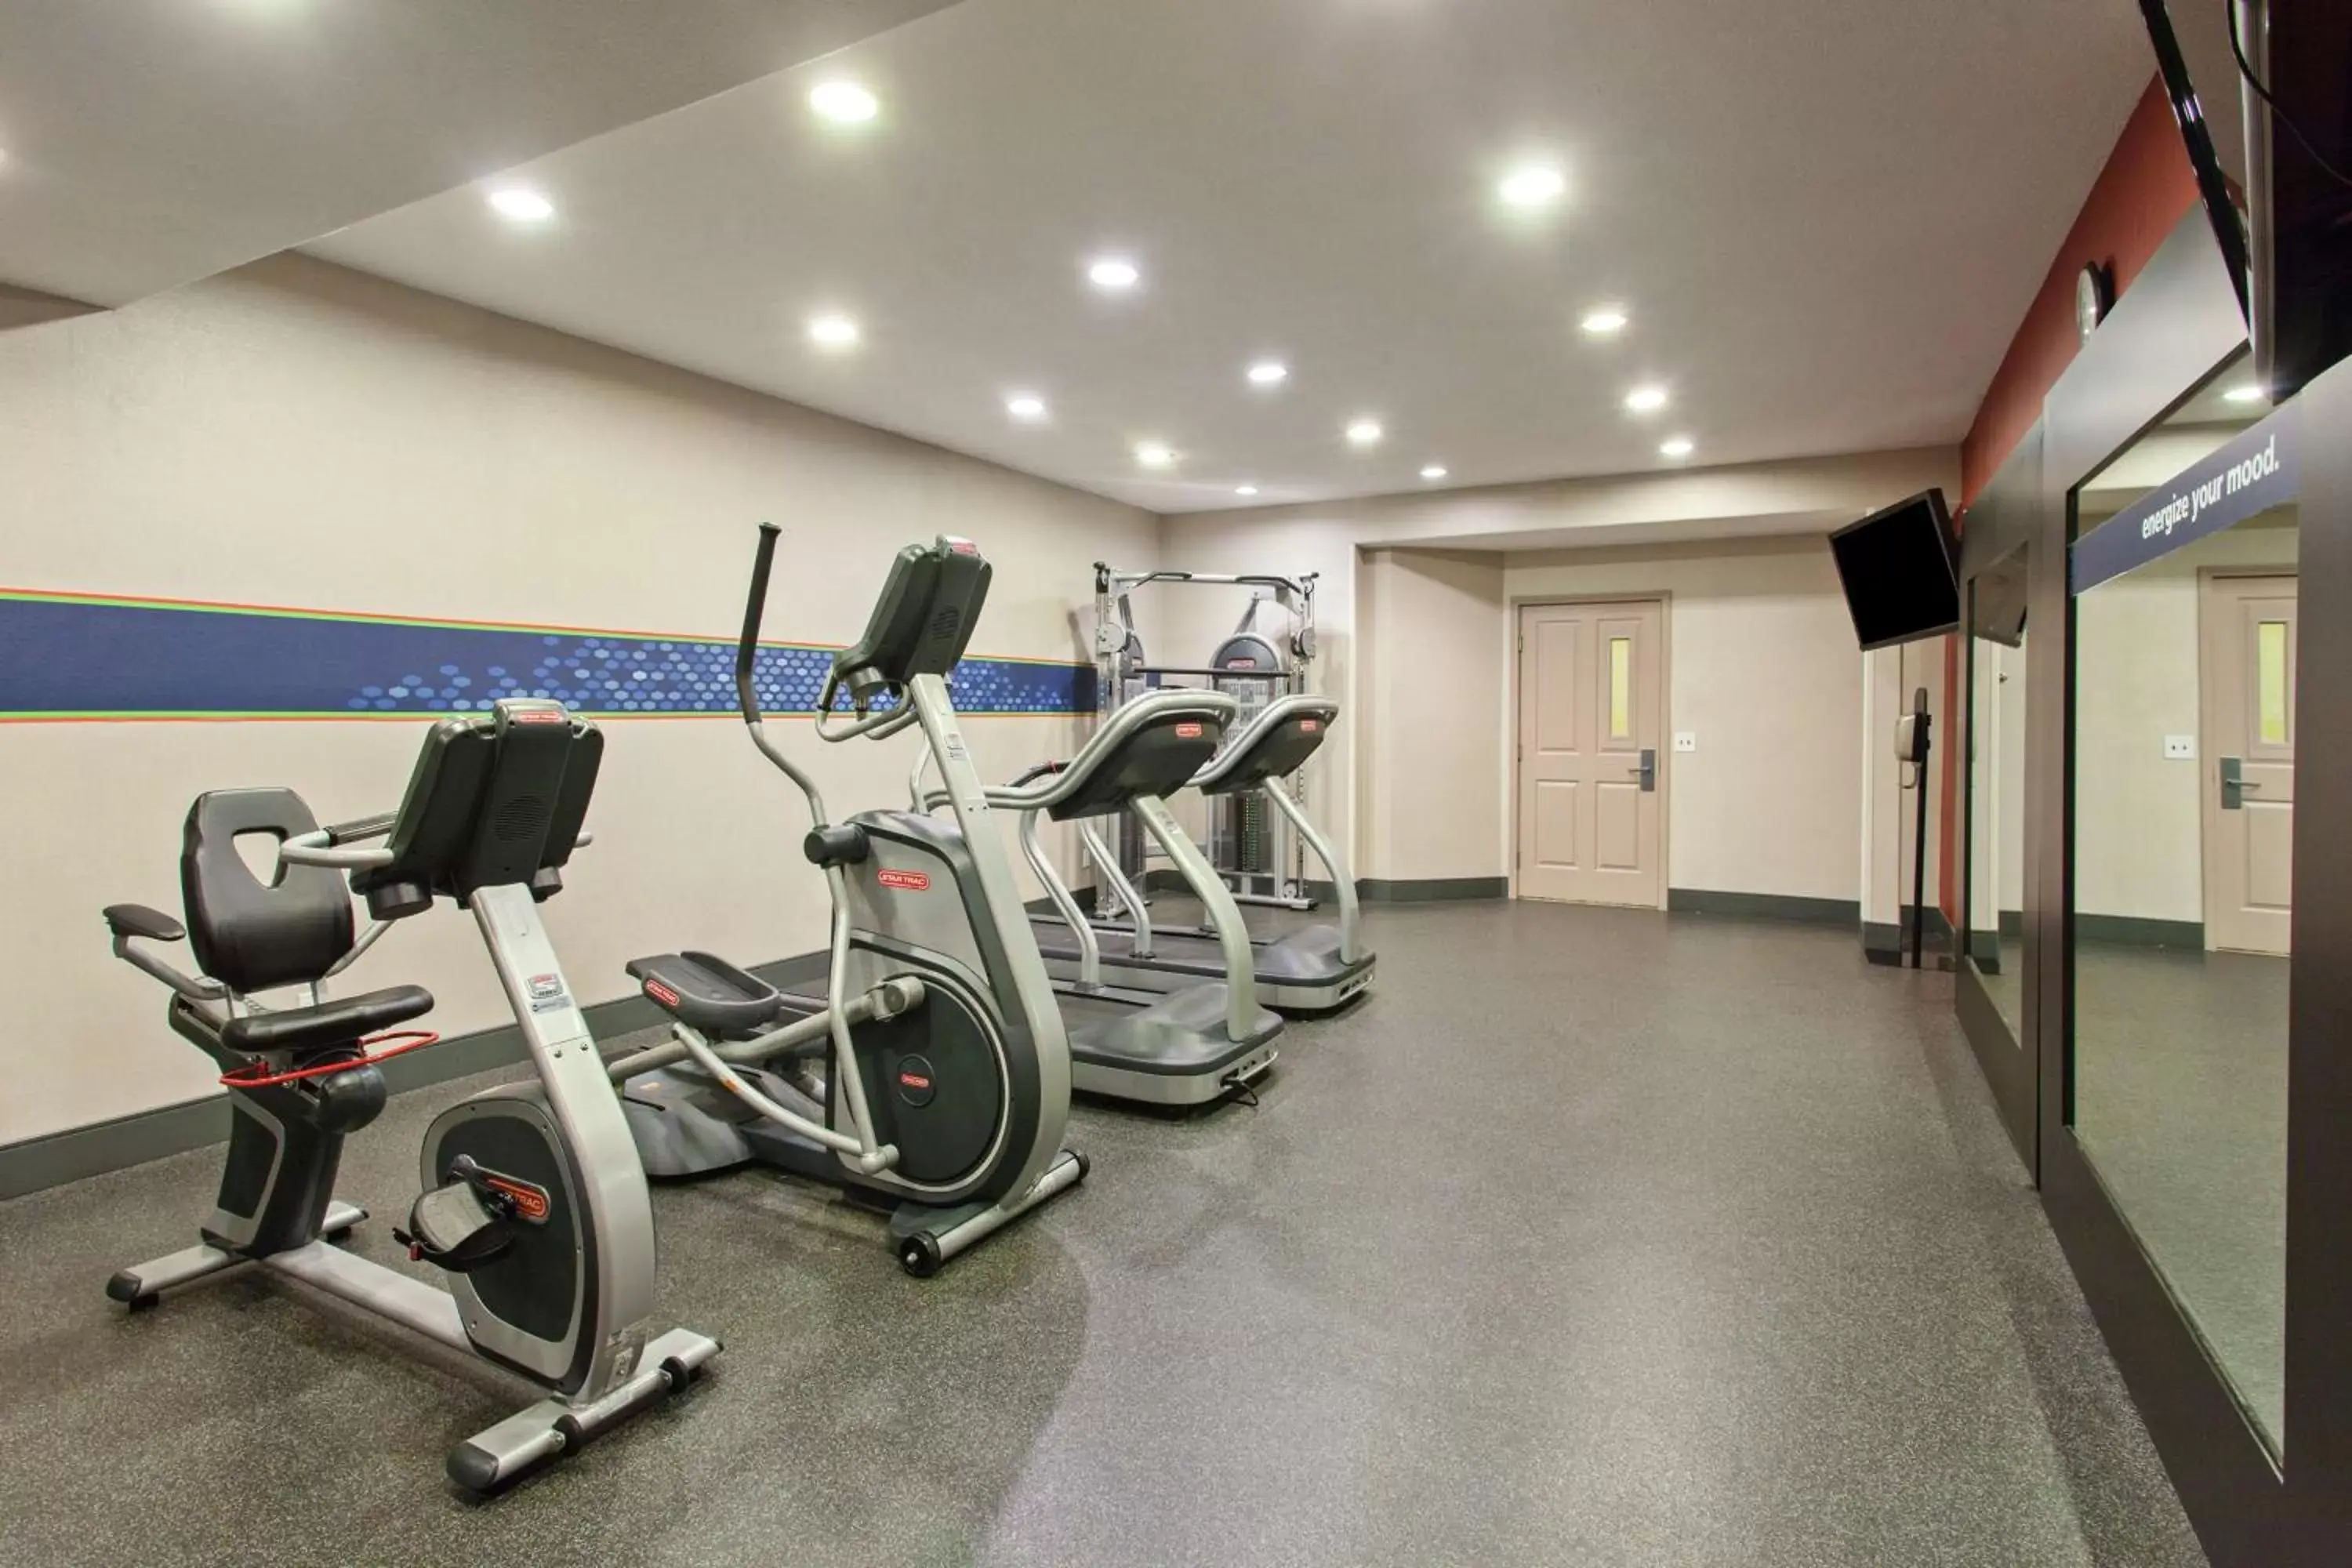 Fitness centre/facilities, Fitness Center/Facilities in Hampton Inn Morgan Hill